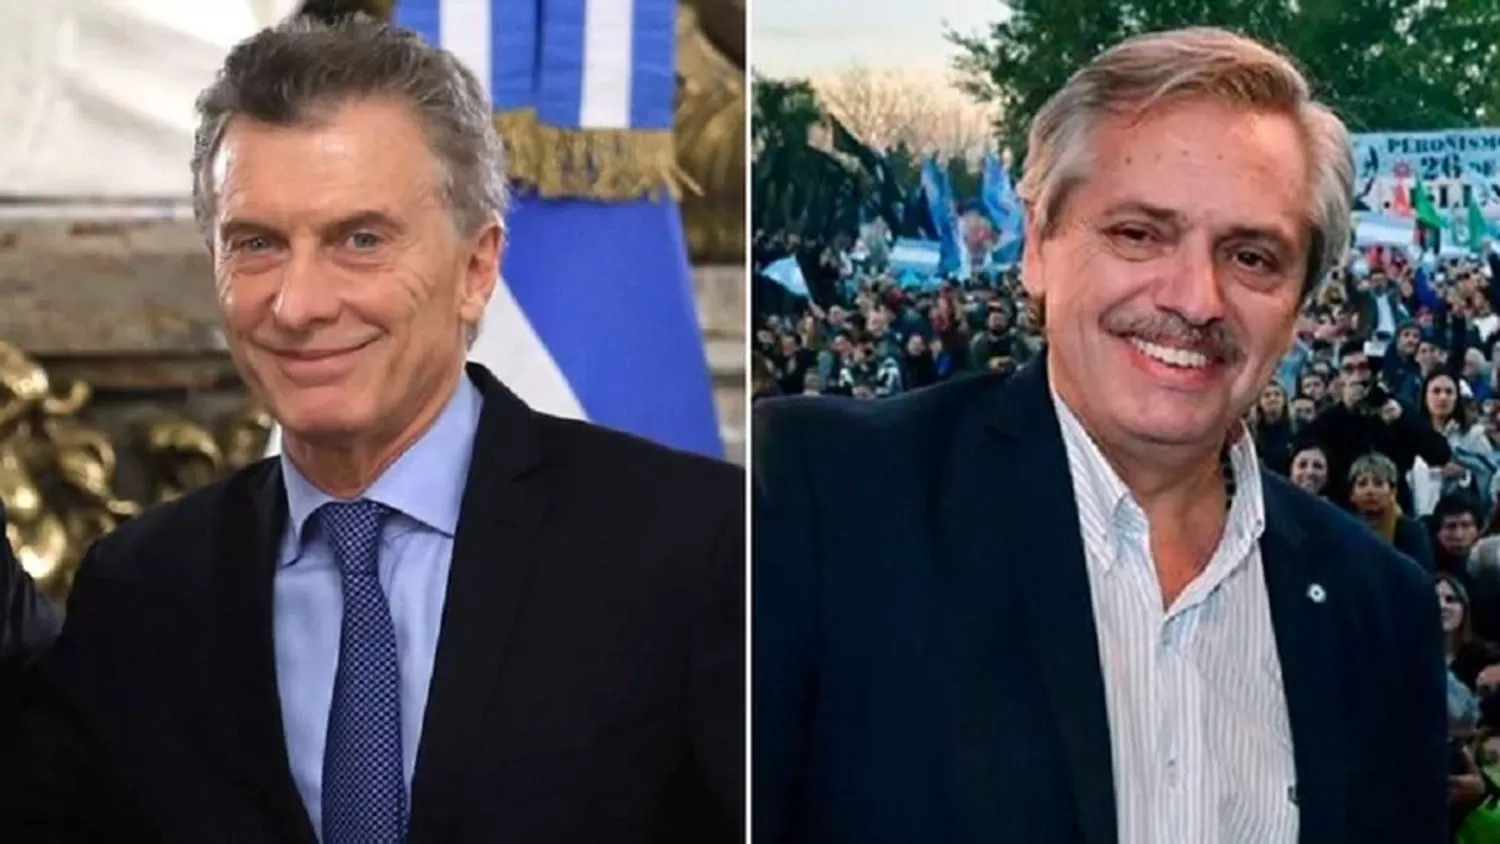 Declaraciones juradas: Macri tiene 50 veces más patrimonio que Alberto Fernández